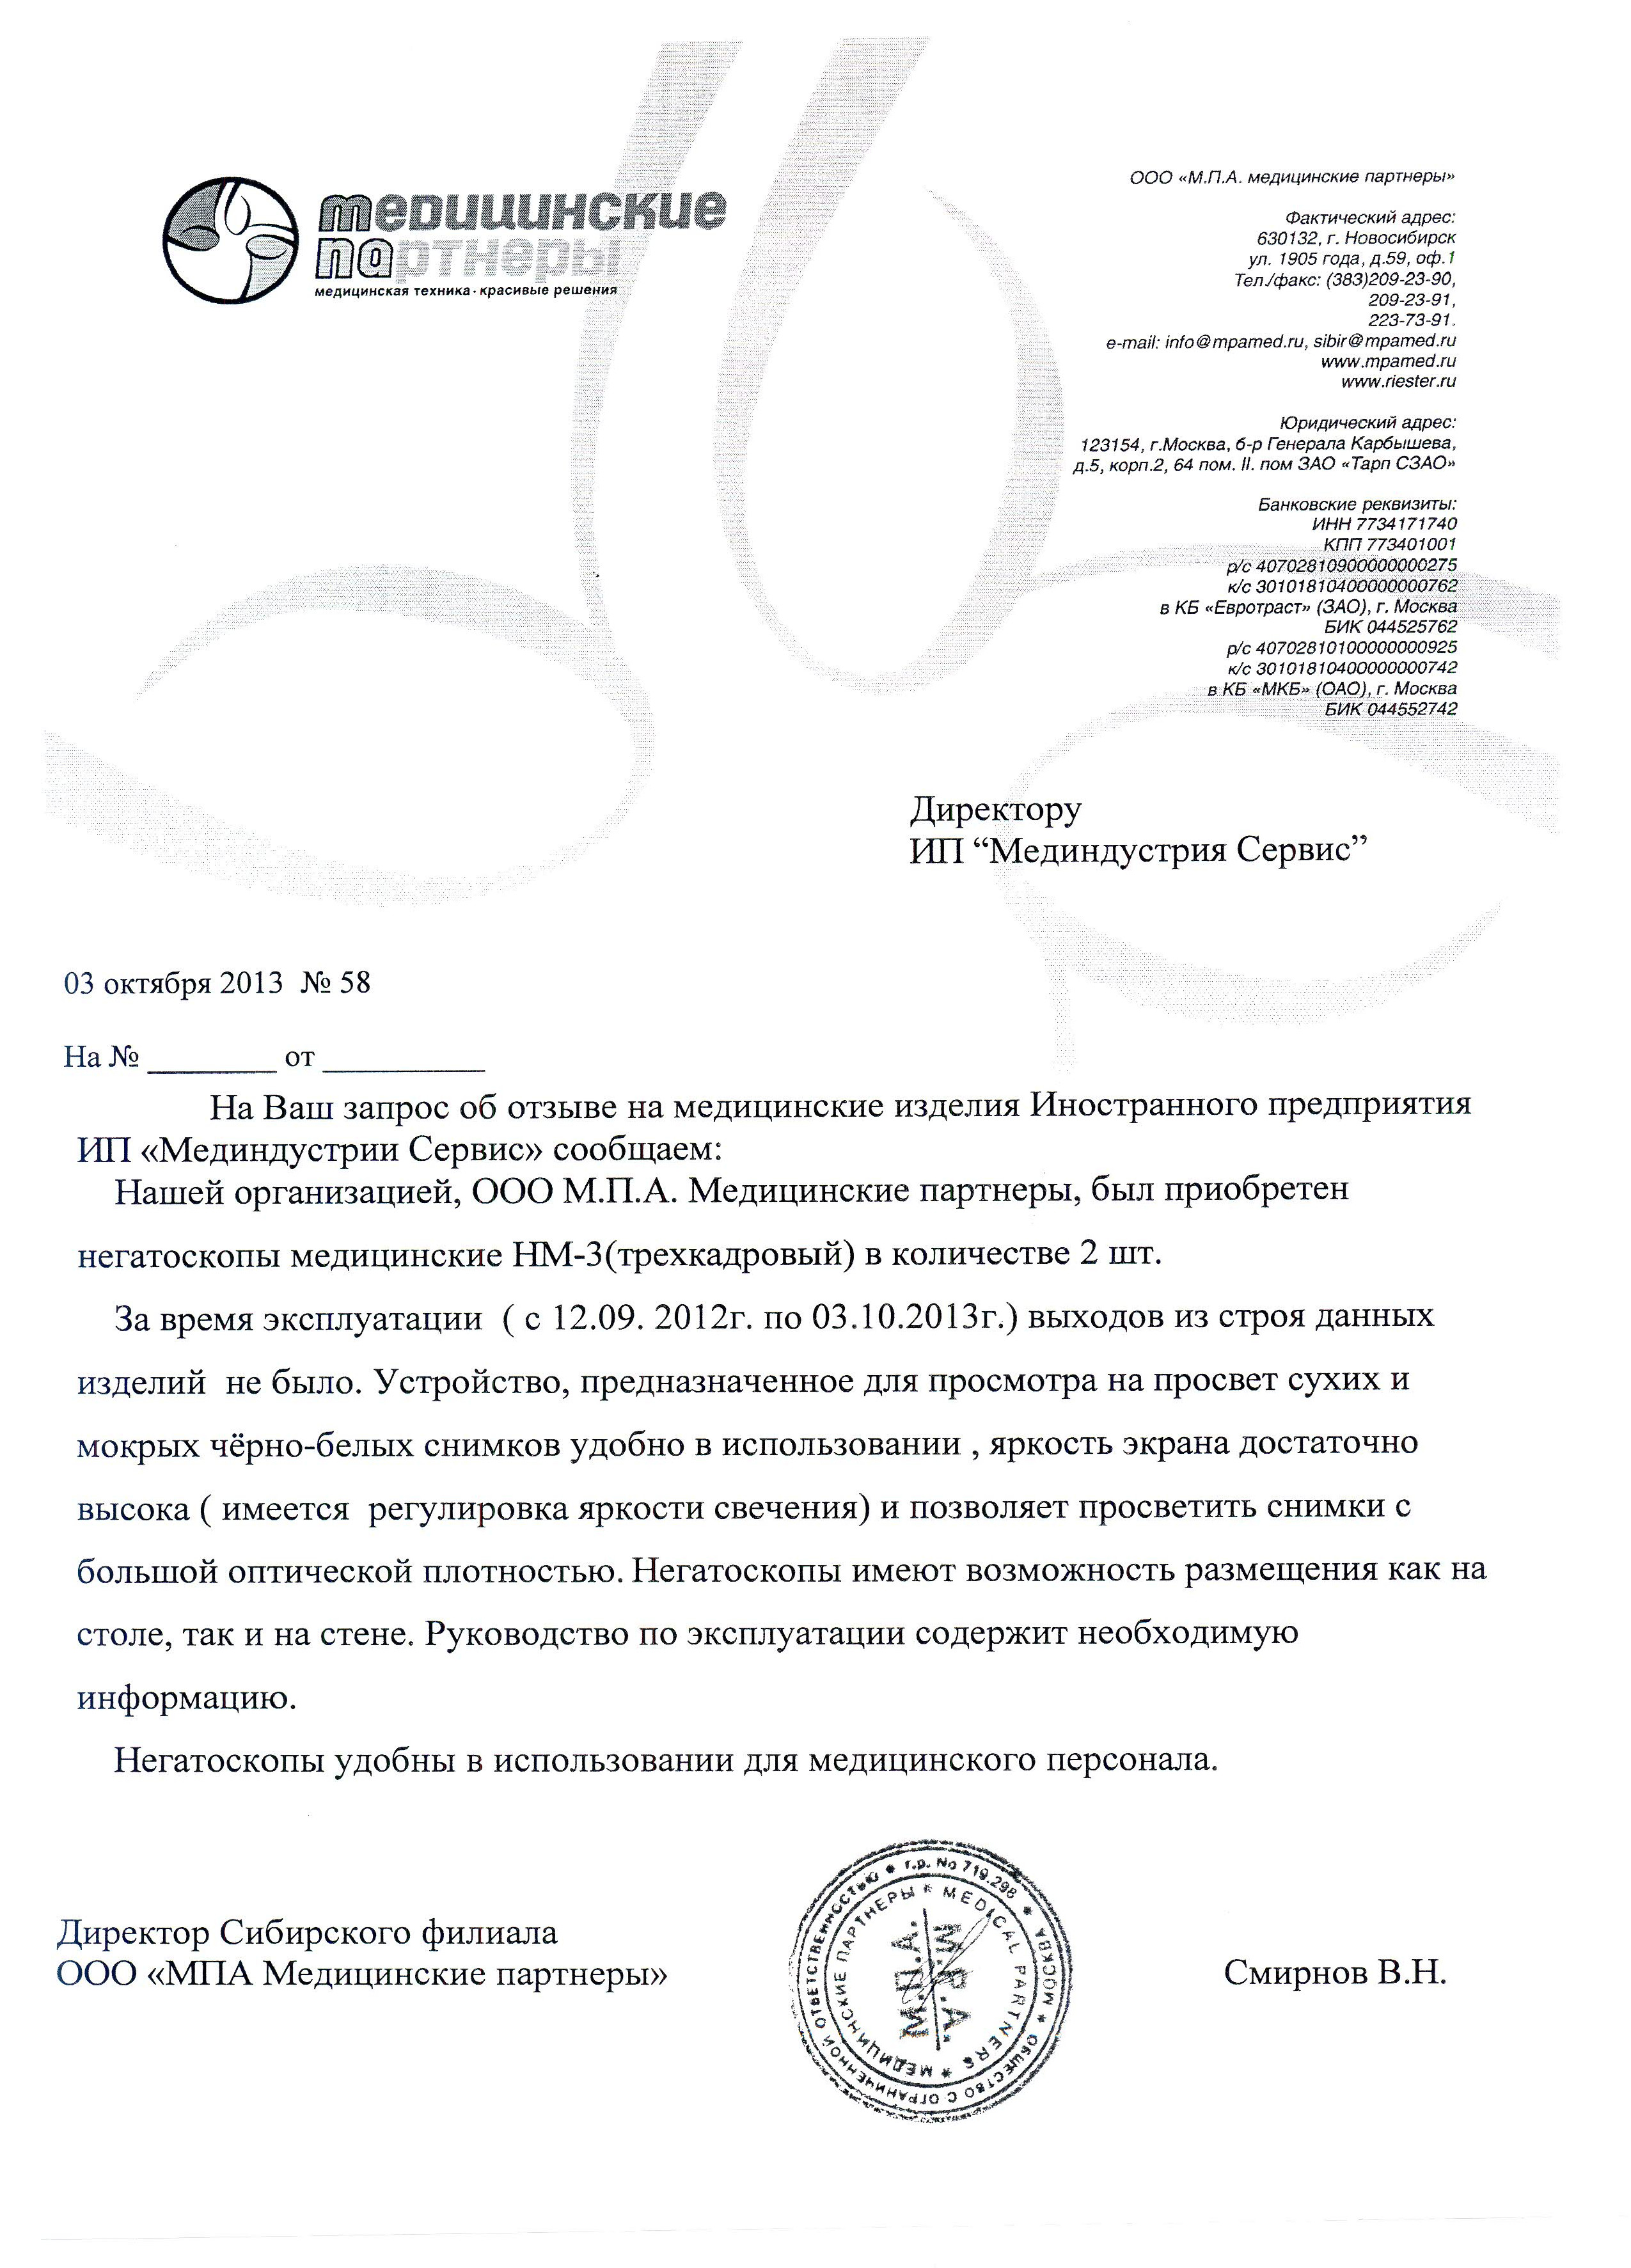 ООО "МПА Медицинские партнеры", Новосибирск о негатоскопах медицинских НМ-3